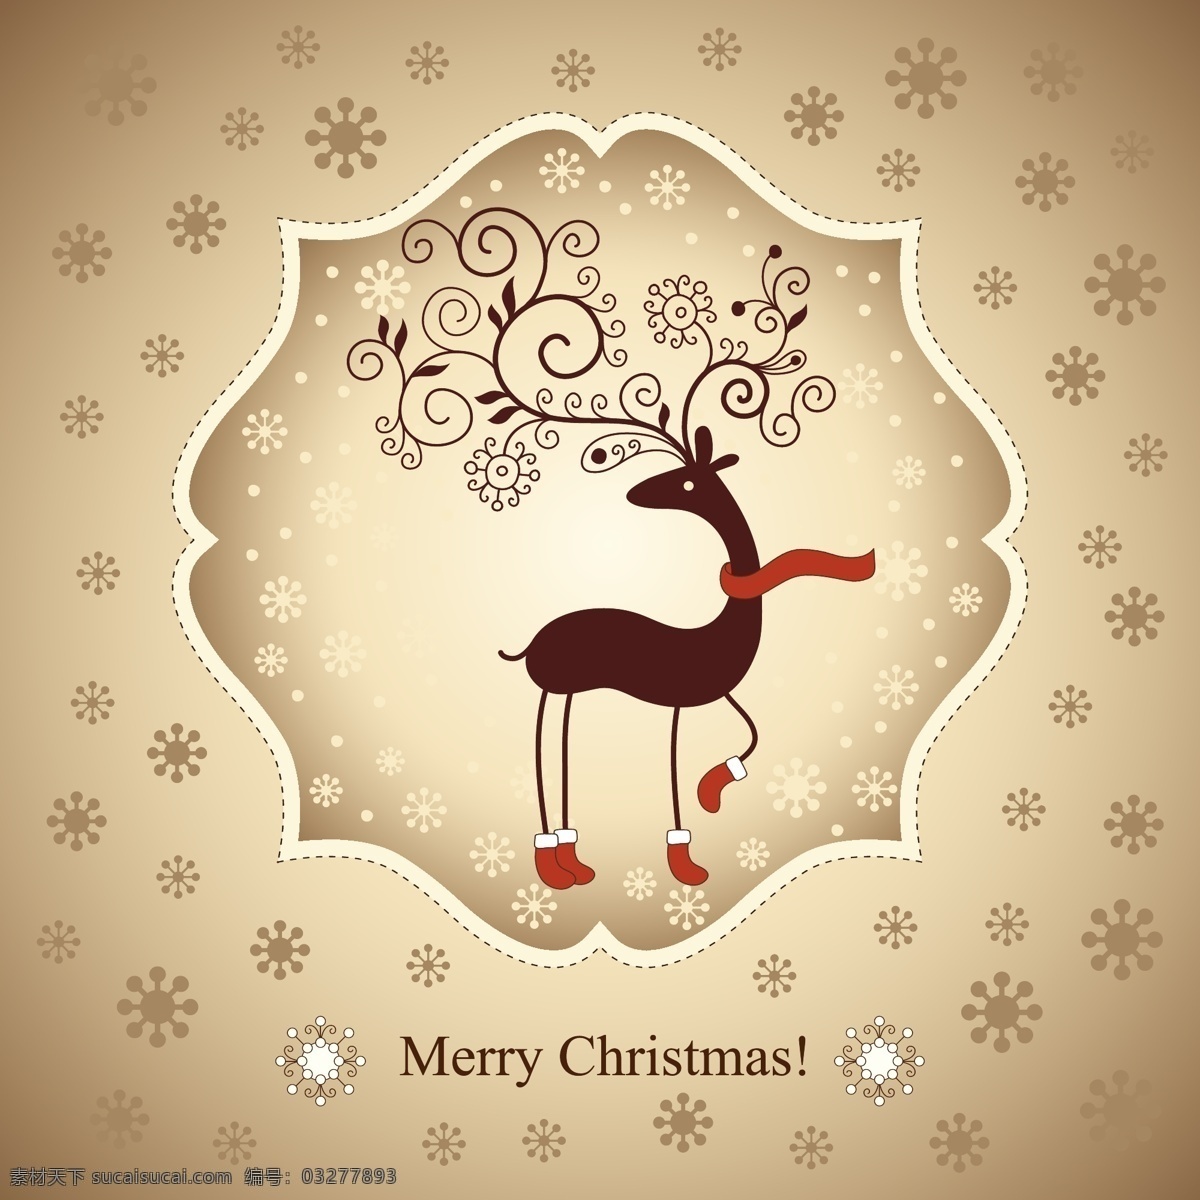 可爱 圣诞 驯鹿 矢量 材料 动物 红 花 麋鹿 圣诞节 雪 矢量图 矢量人物